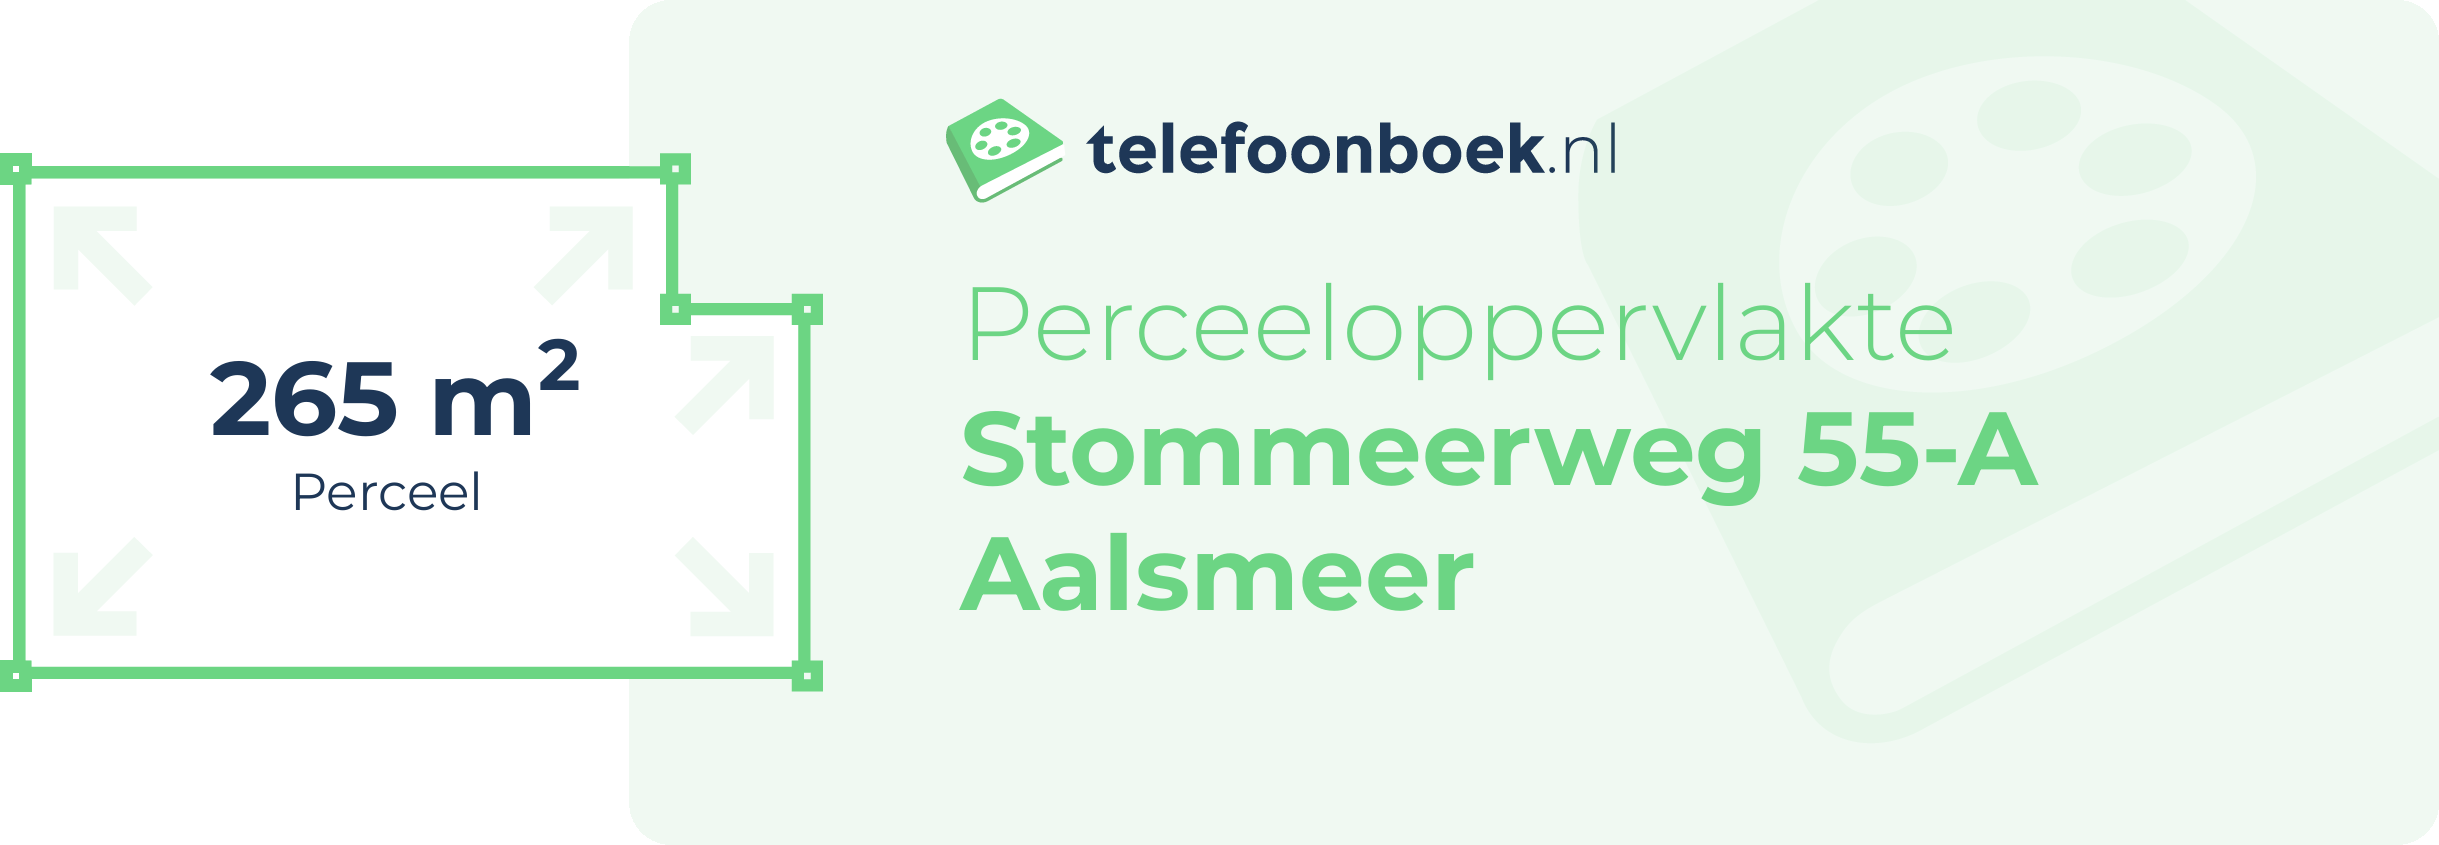 Perceeloppervlakte Stommeerweg 55-A Aalsmeer